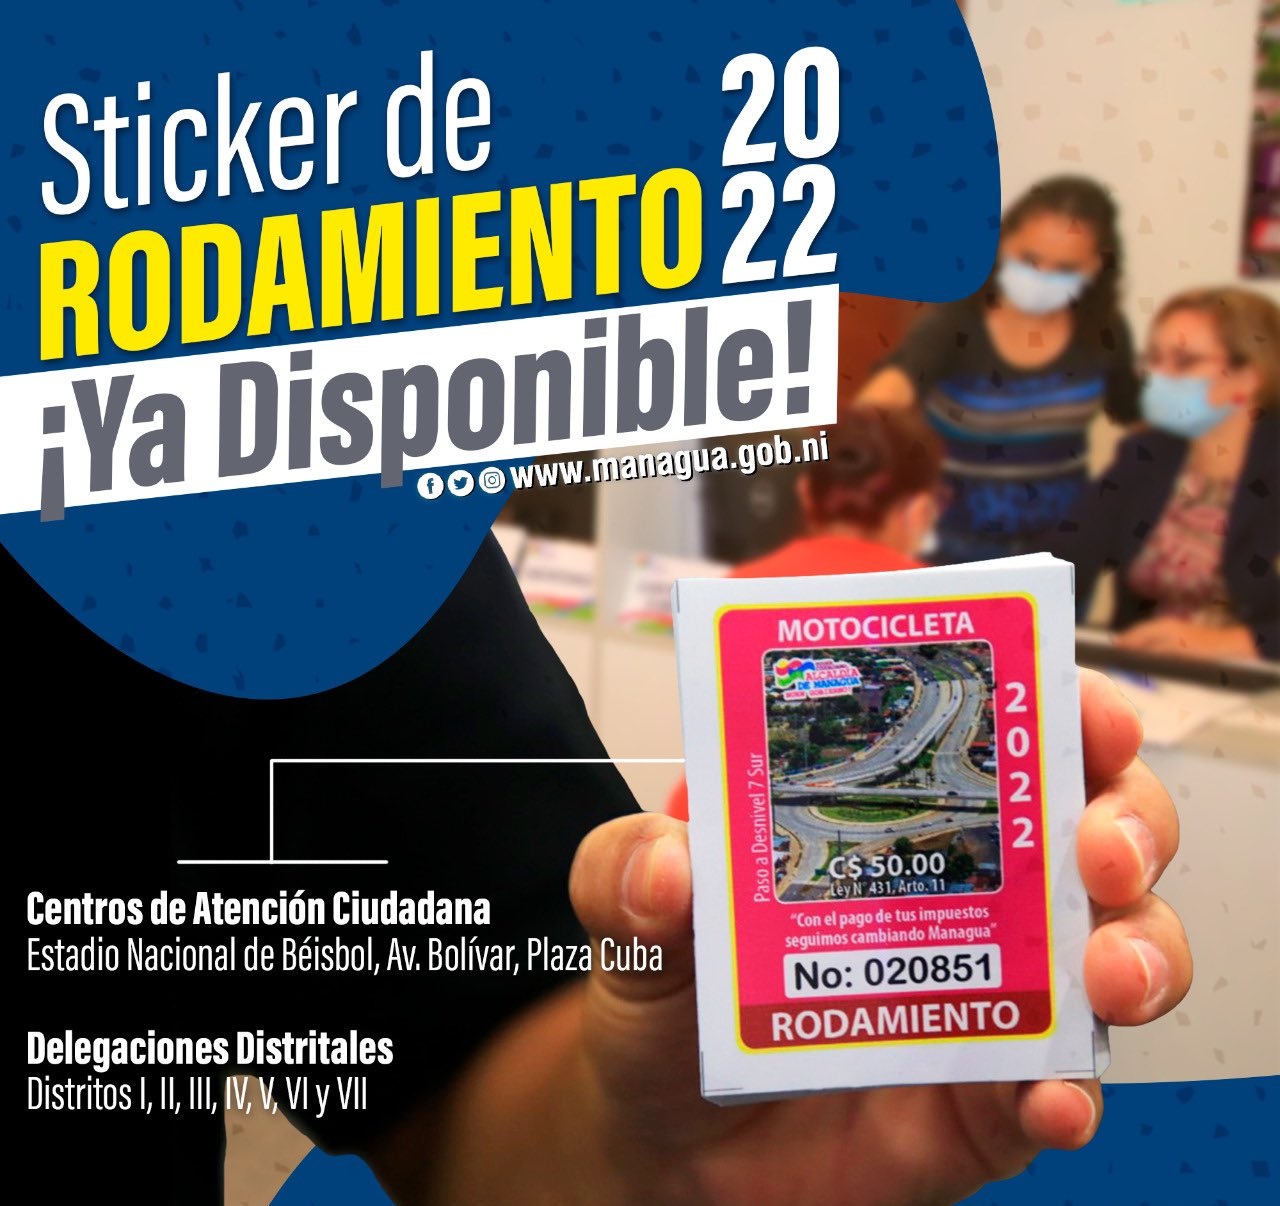 Más de 240 mil capitalinos deben cumplir con pago del sticker de rodamiento Managua. Danielka Ruíz/Radio La Primerísima